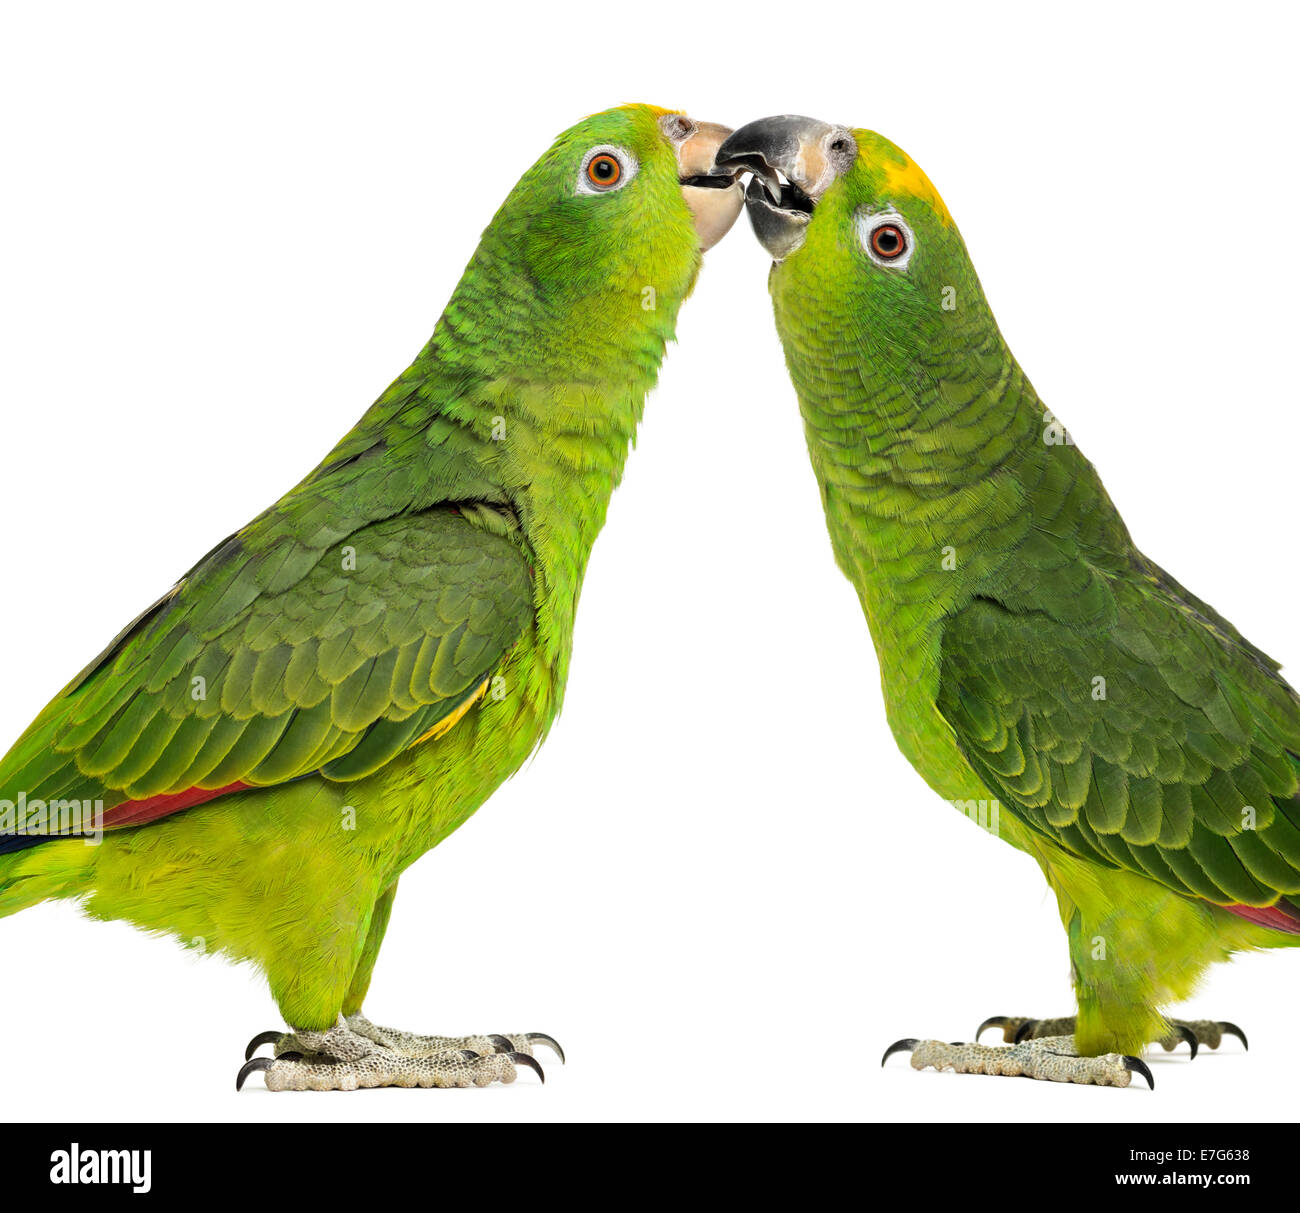 Gelbe liebesvögel -Fotos und -Bildmaterial in hoher Auflösung – Alamy